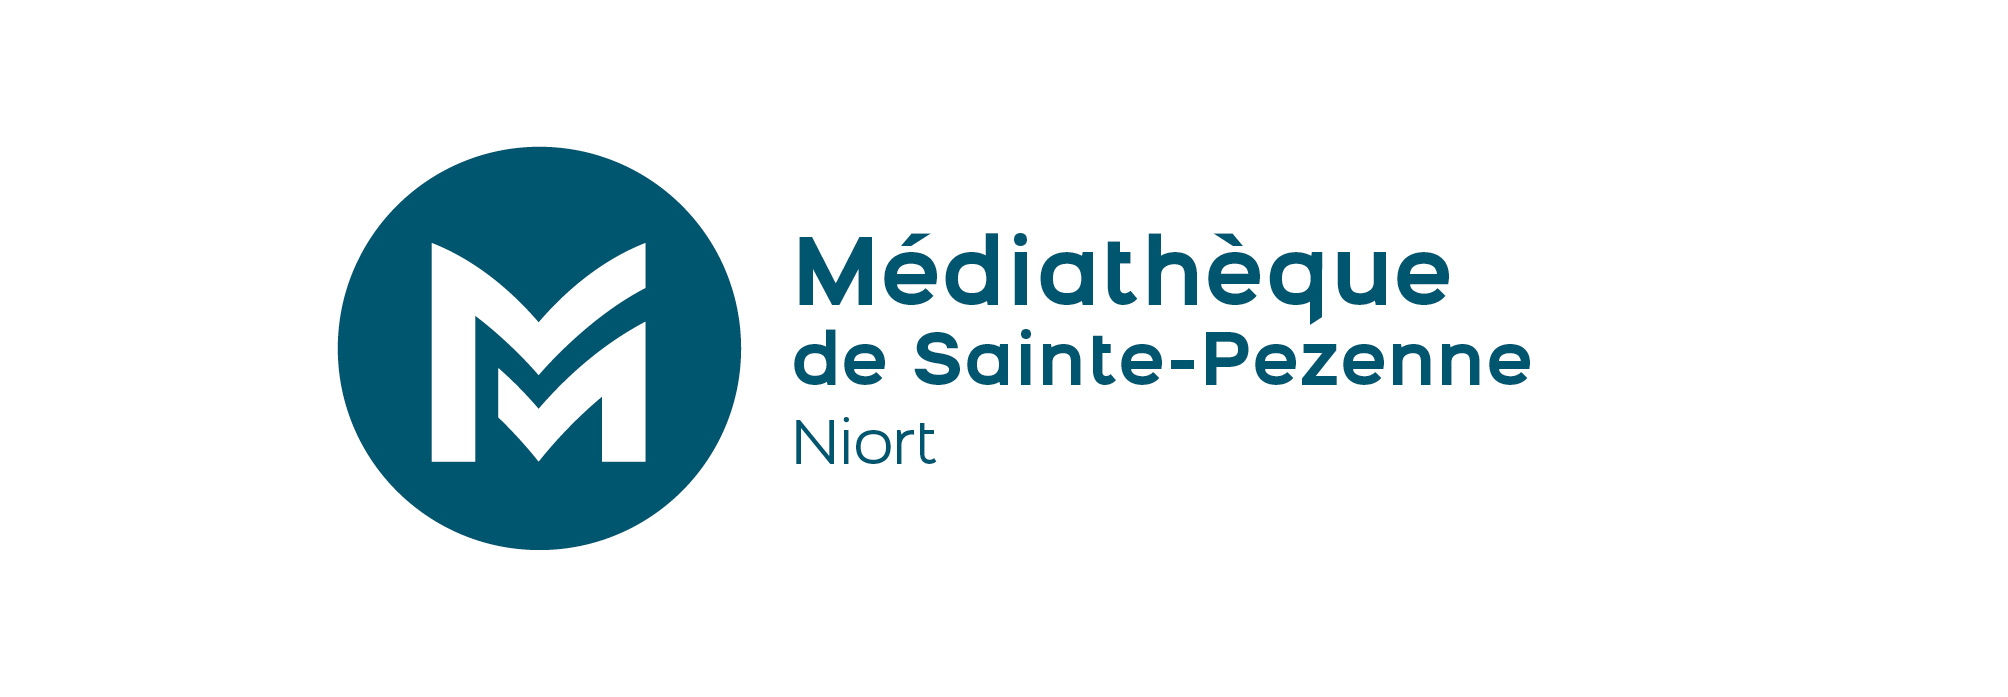 Médiathèque Sainte-Pezenne